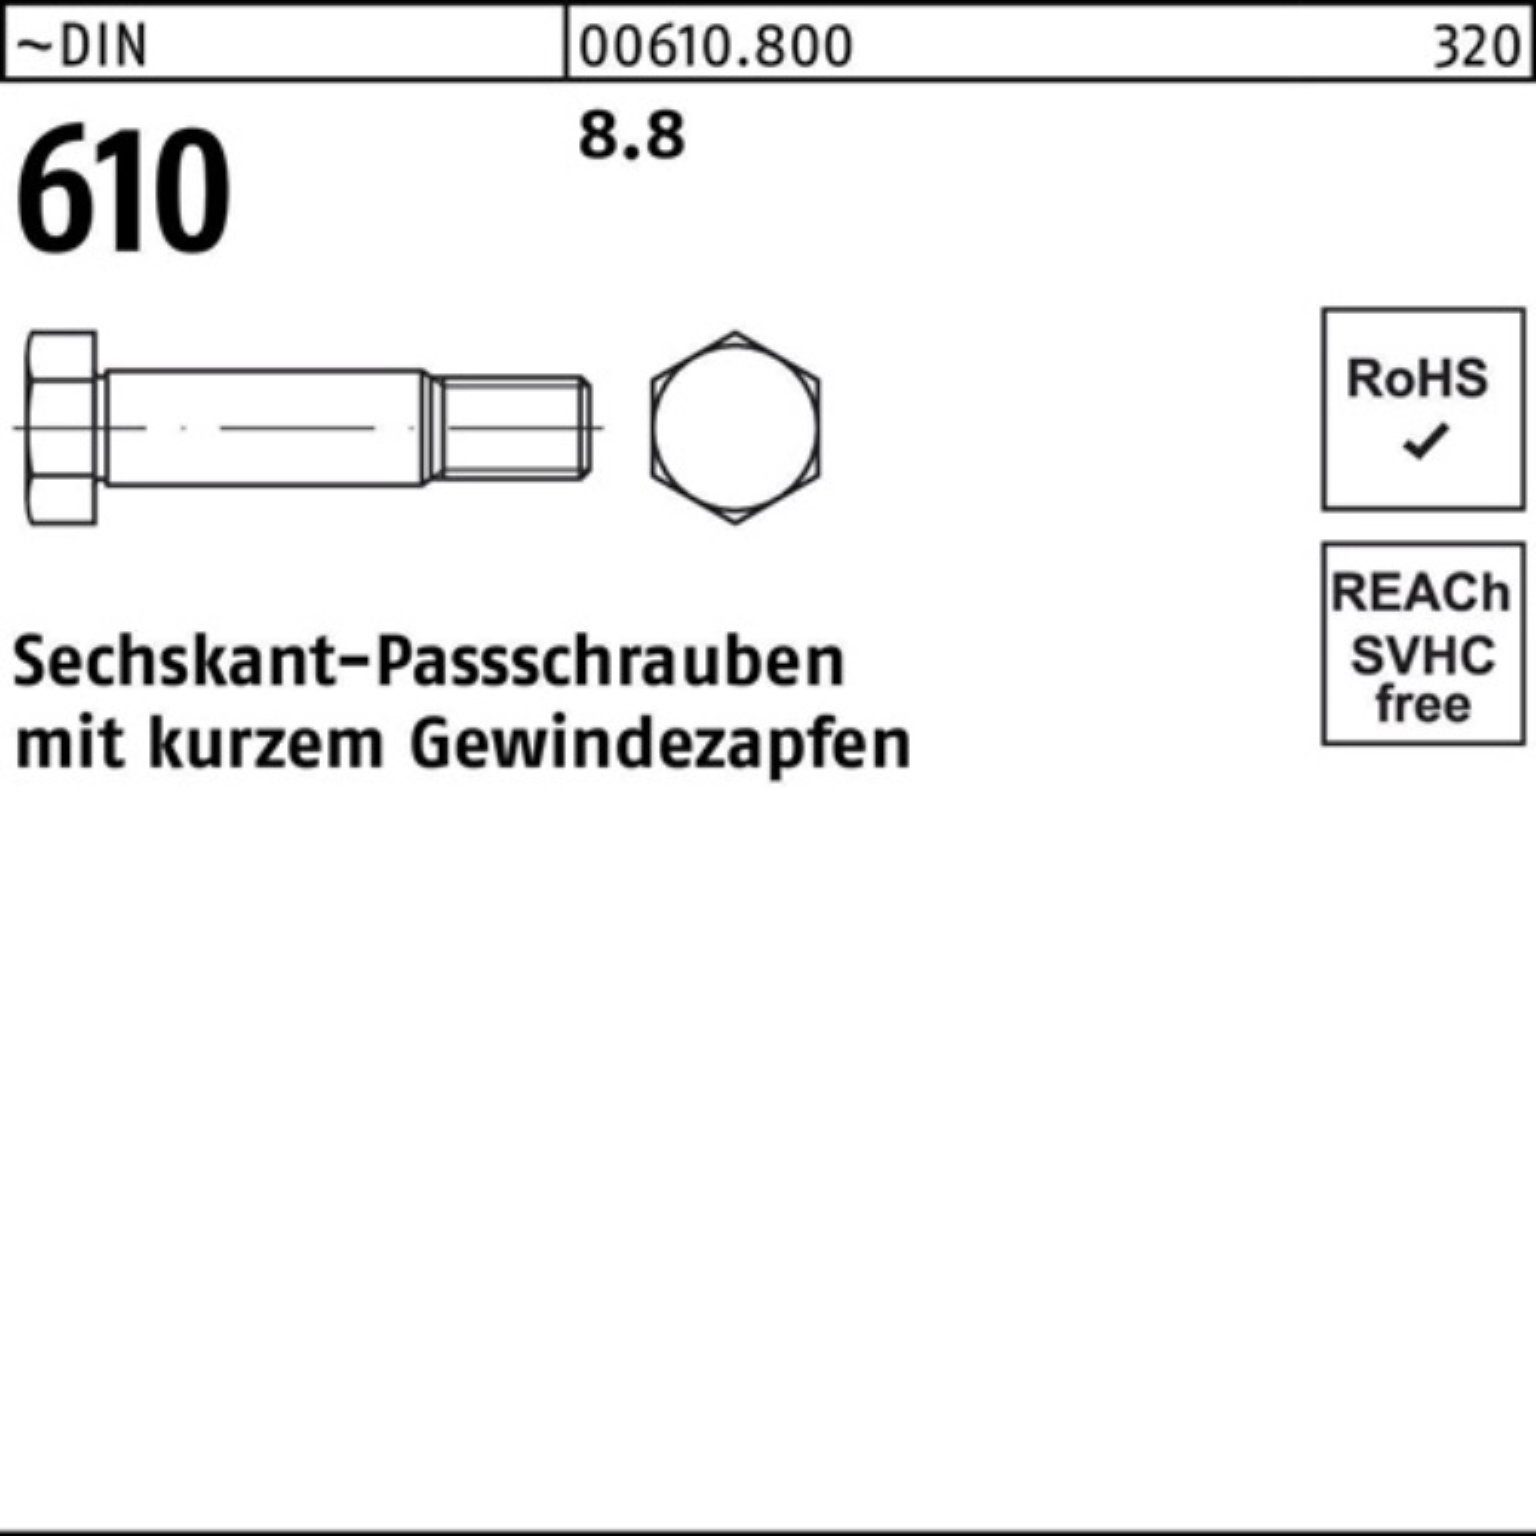 610 Sechskantpassschraube Gewindezapfen Pack Reyher Schraube DIN M10x kurzem 55 100er